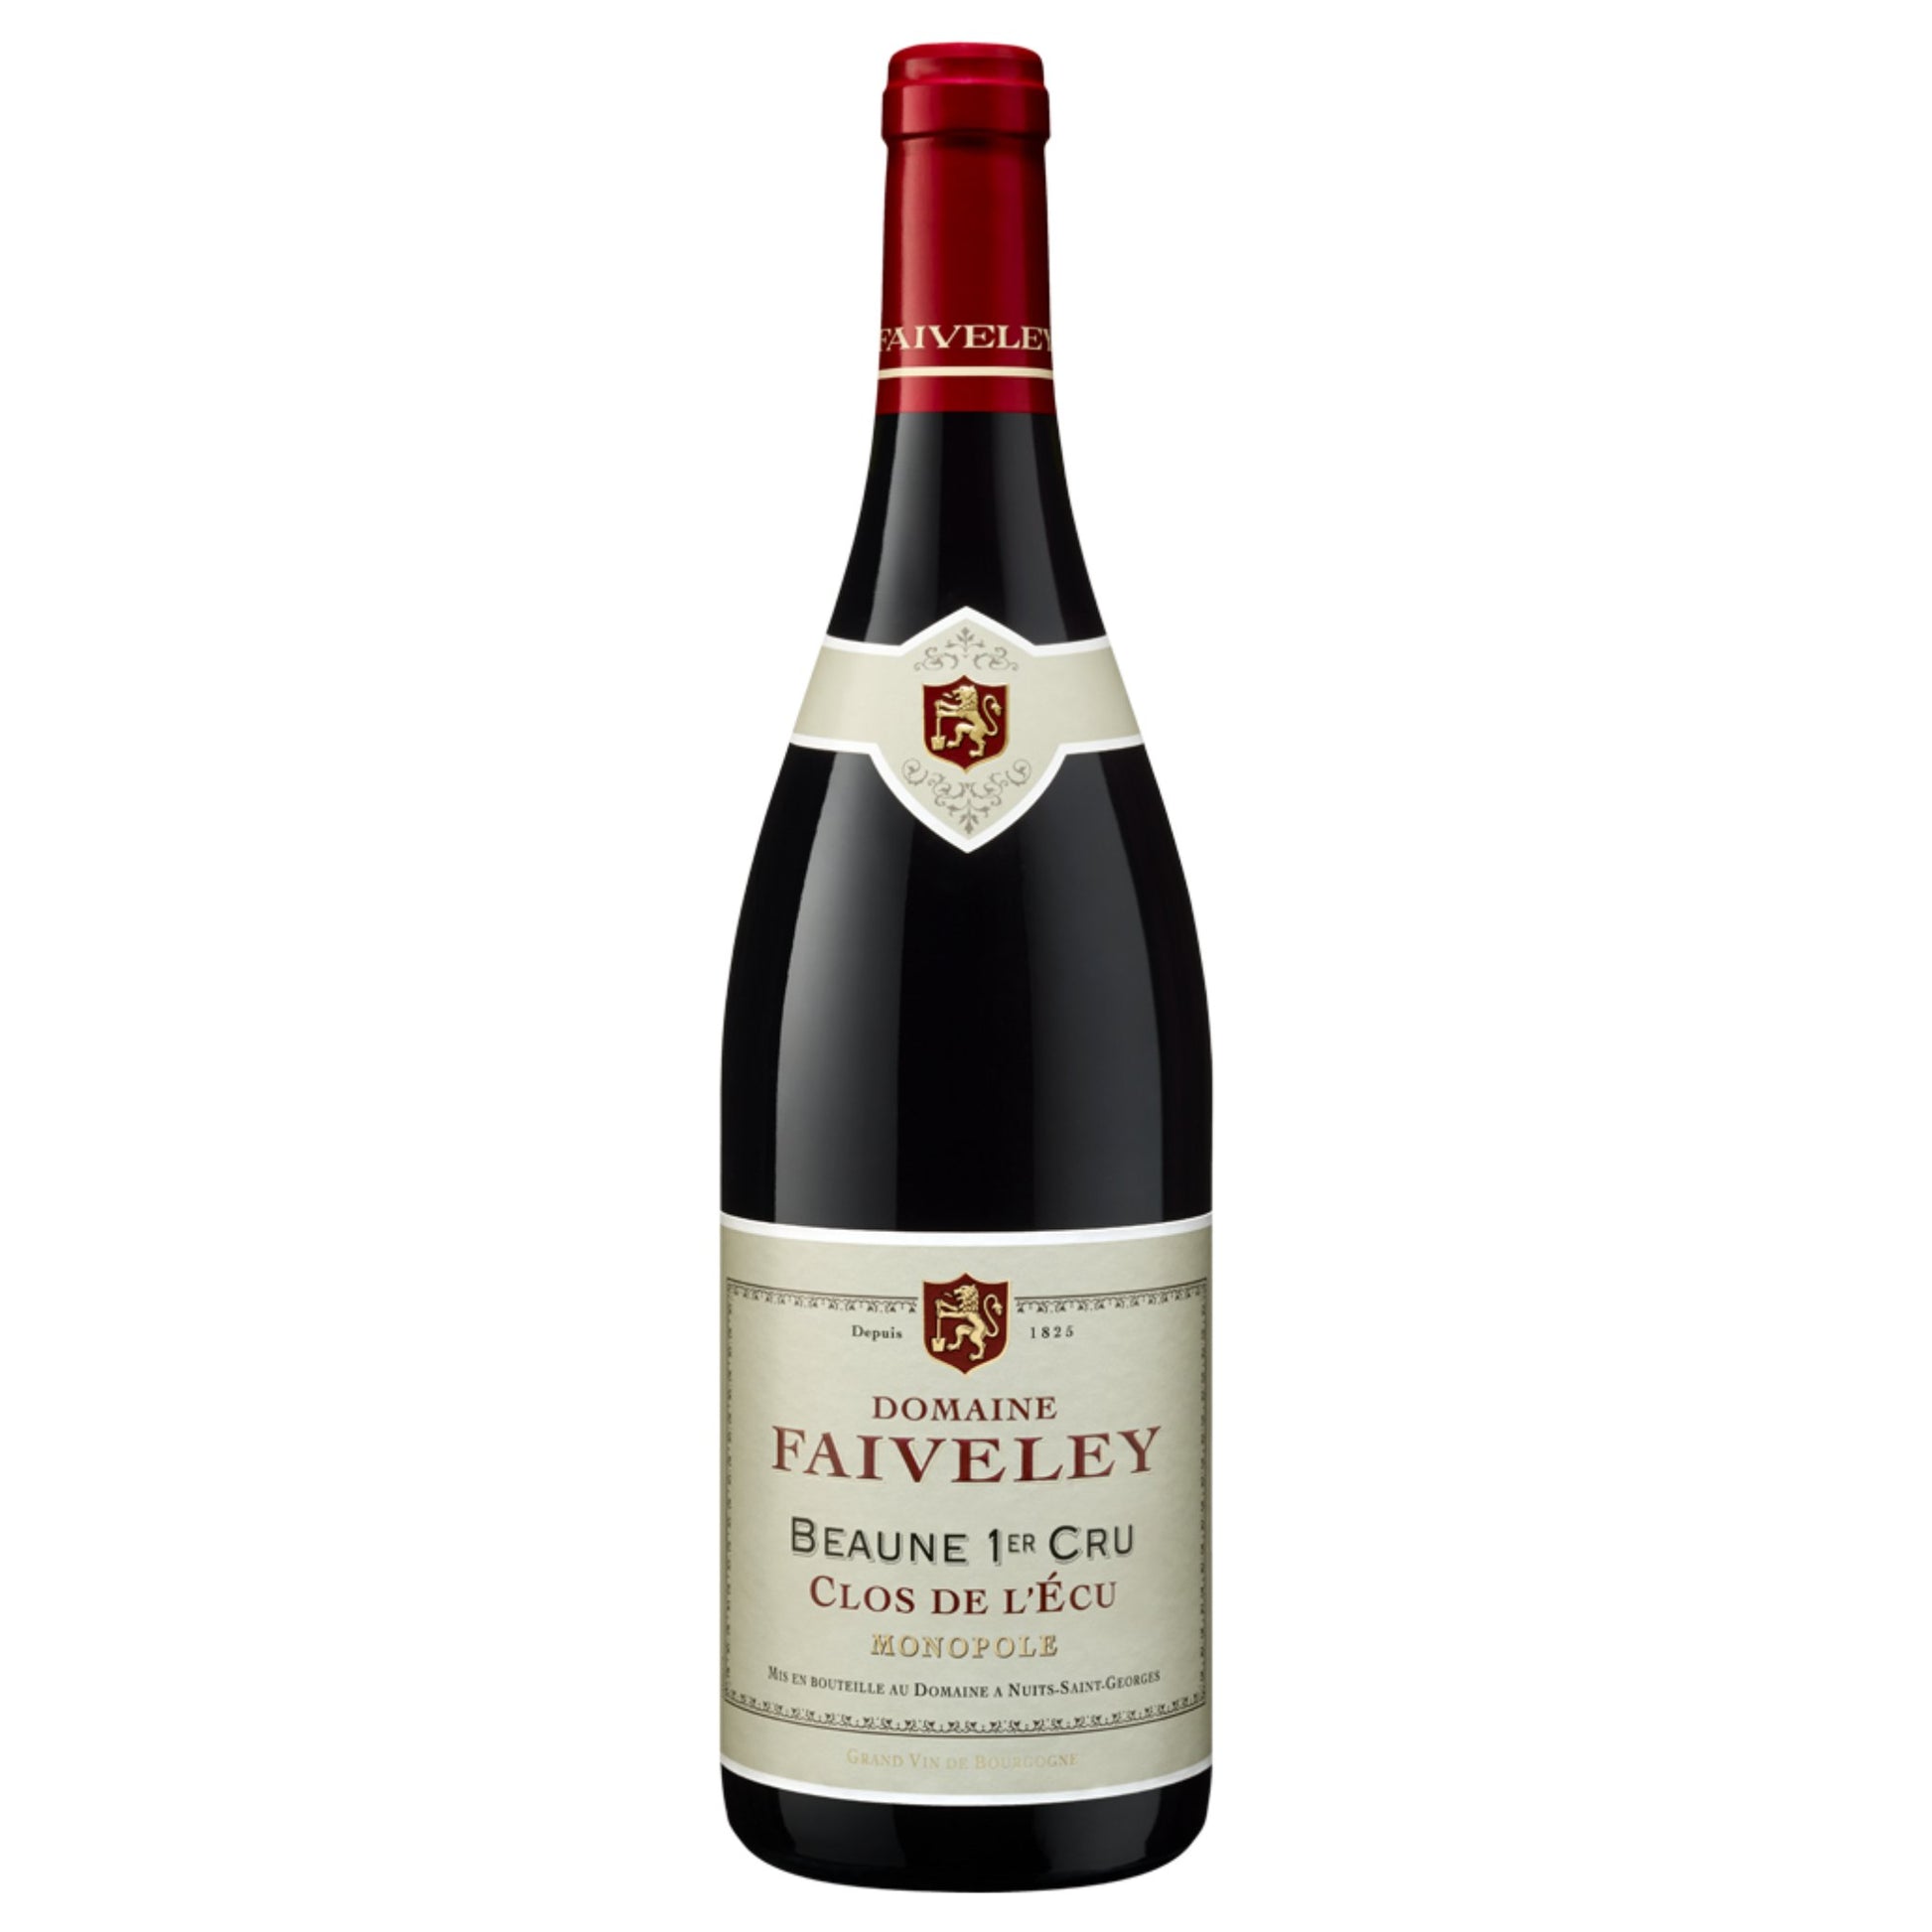 Faiveley Beaune 1er Cru "Clos de L'Ecu" Monopole - Grand Vin Pte Ltd